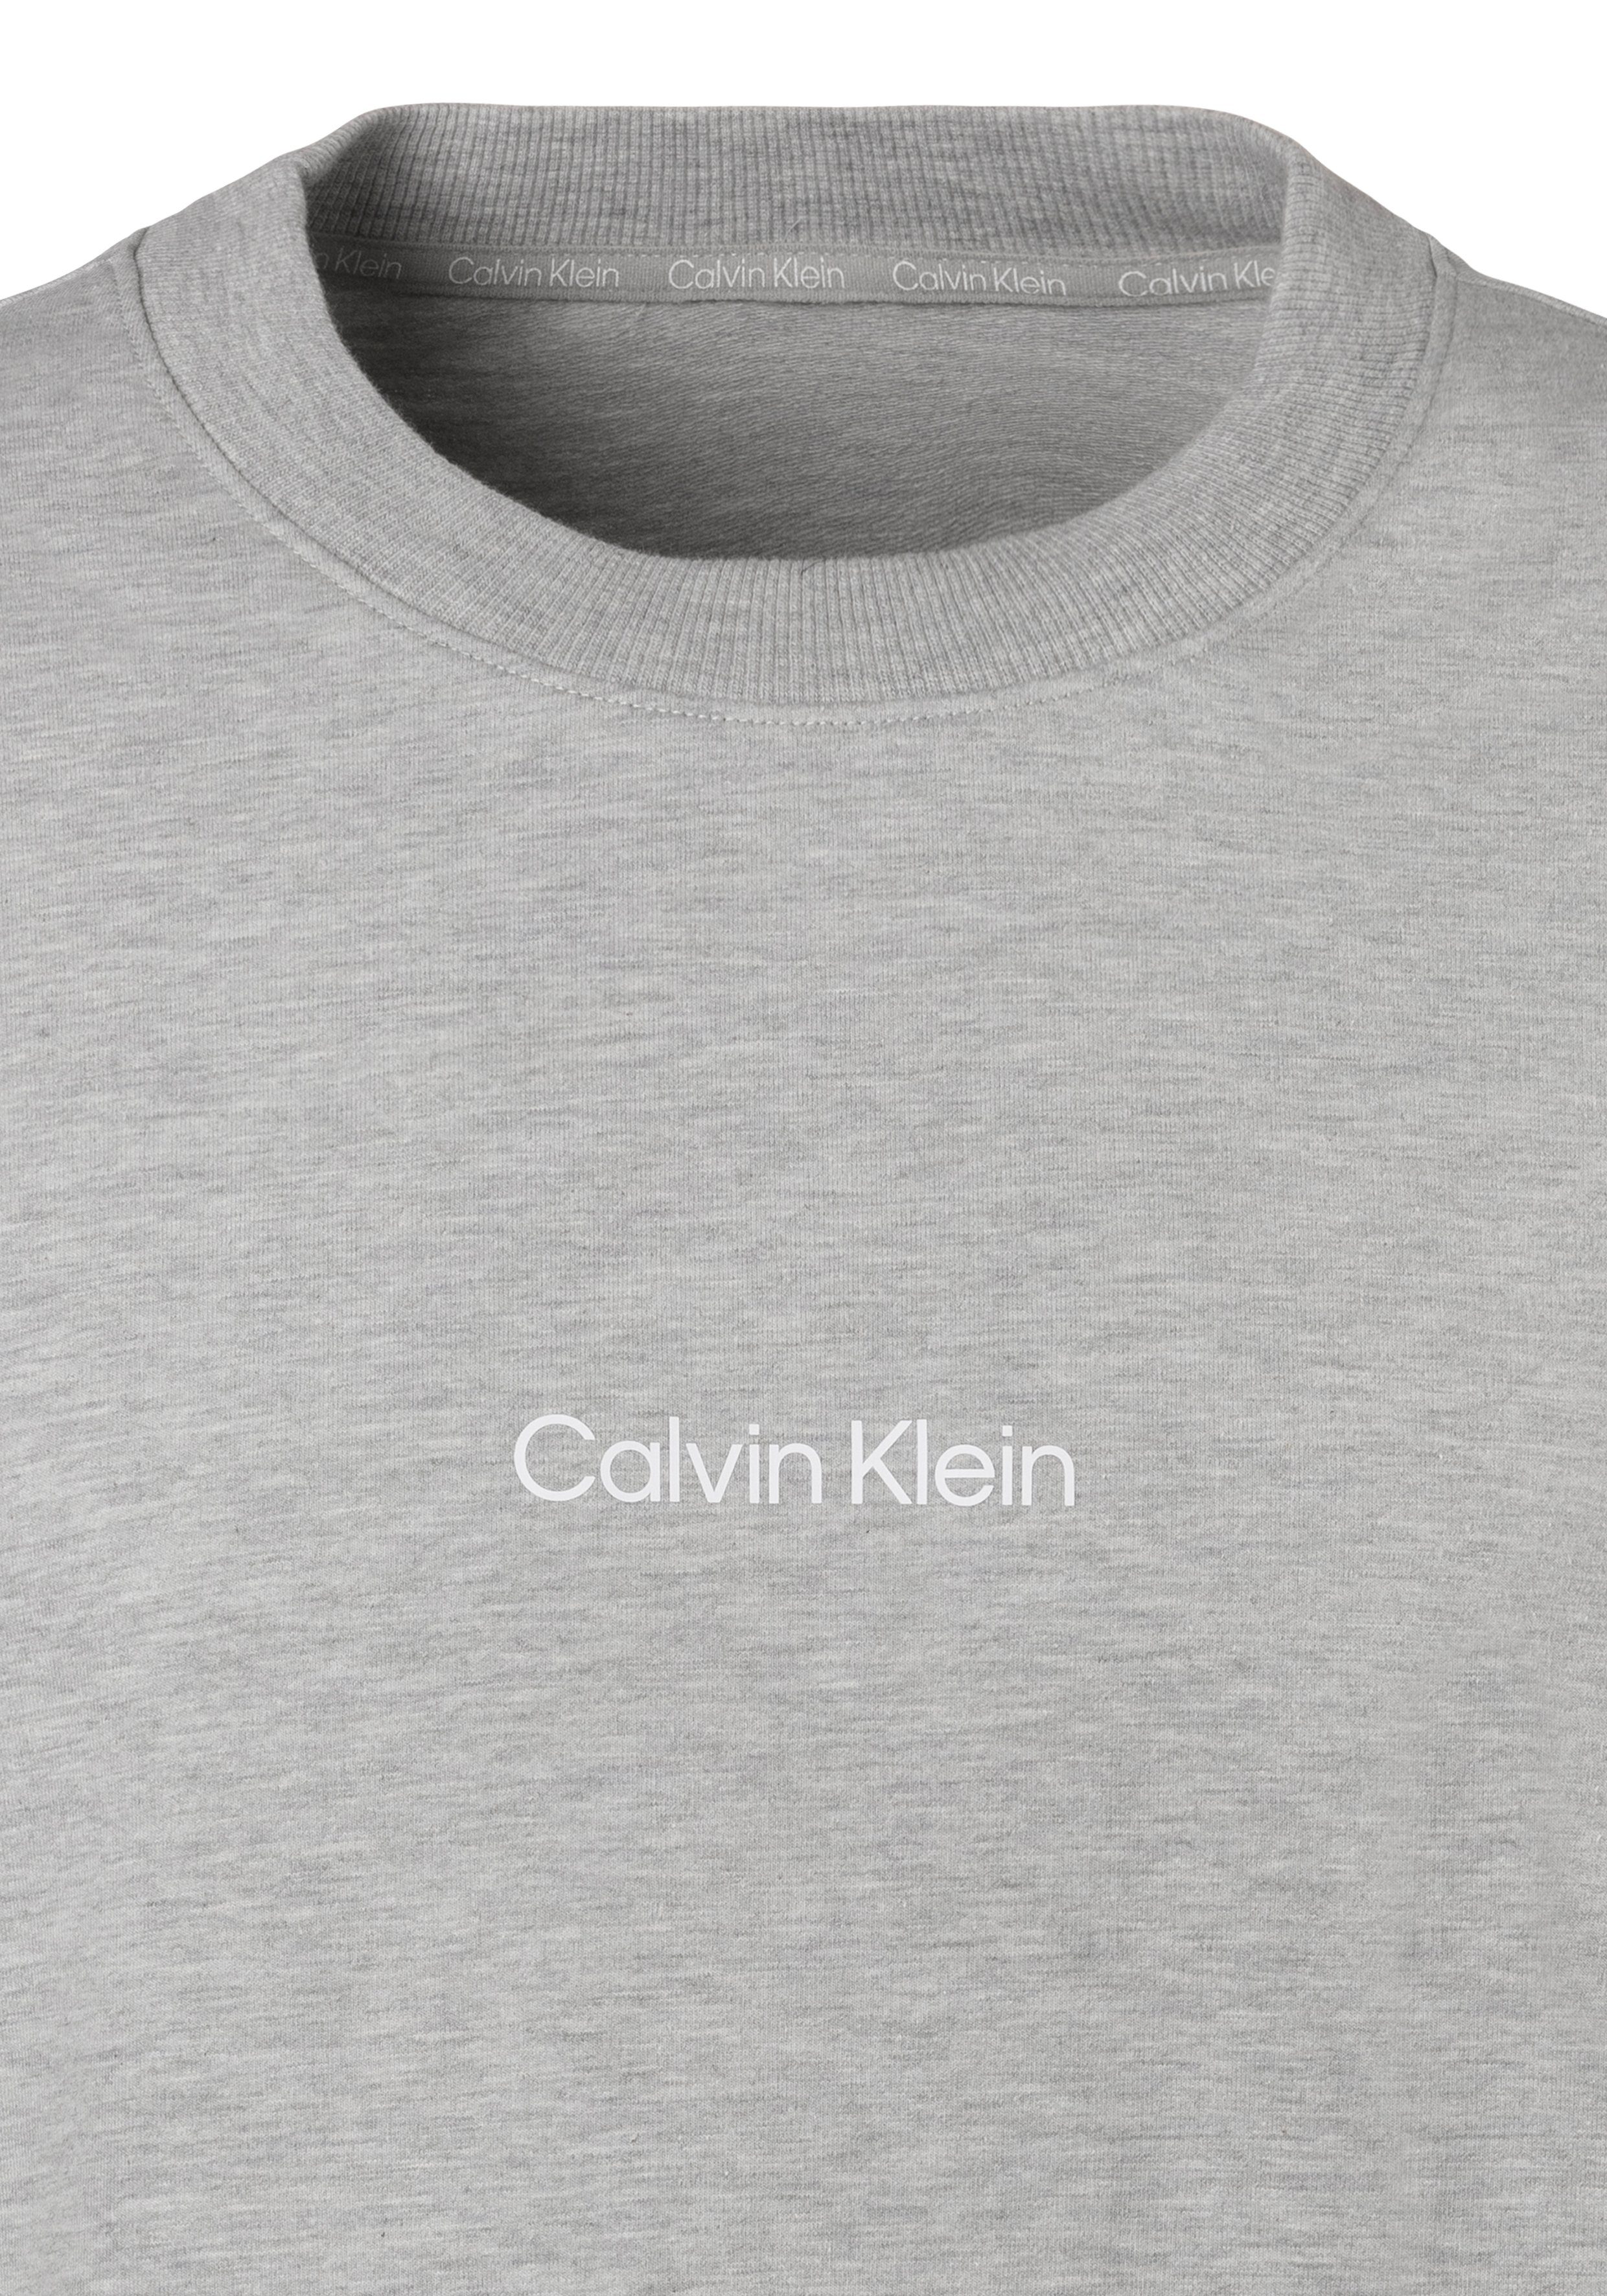 Klein vorn Sweatshirt mit grau-meliert Underwear Logodruck Calvin